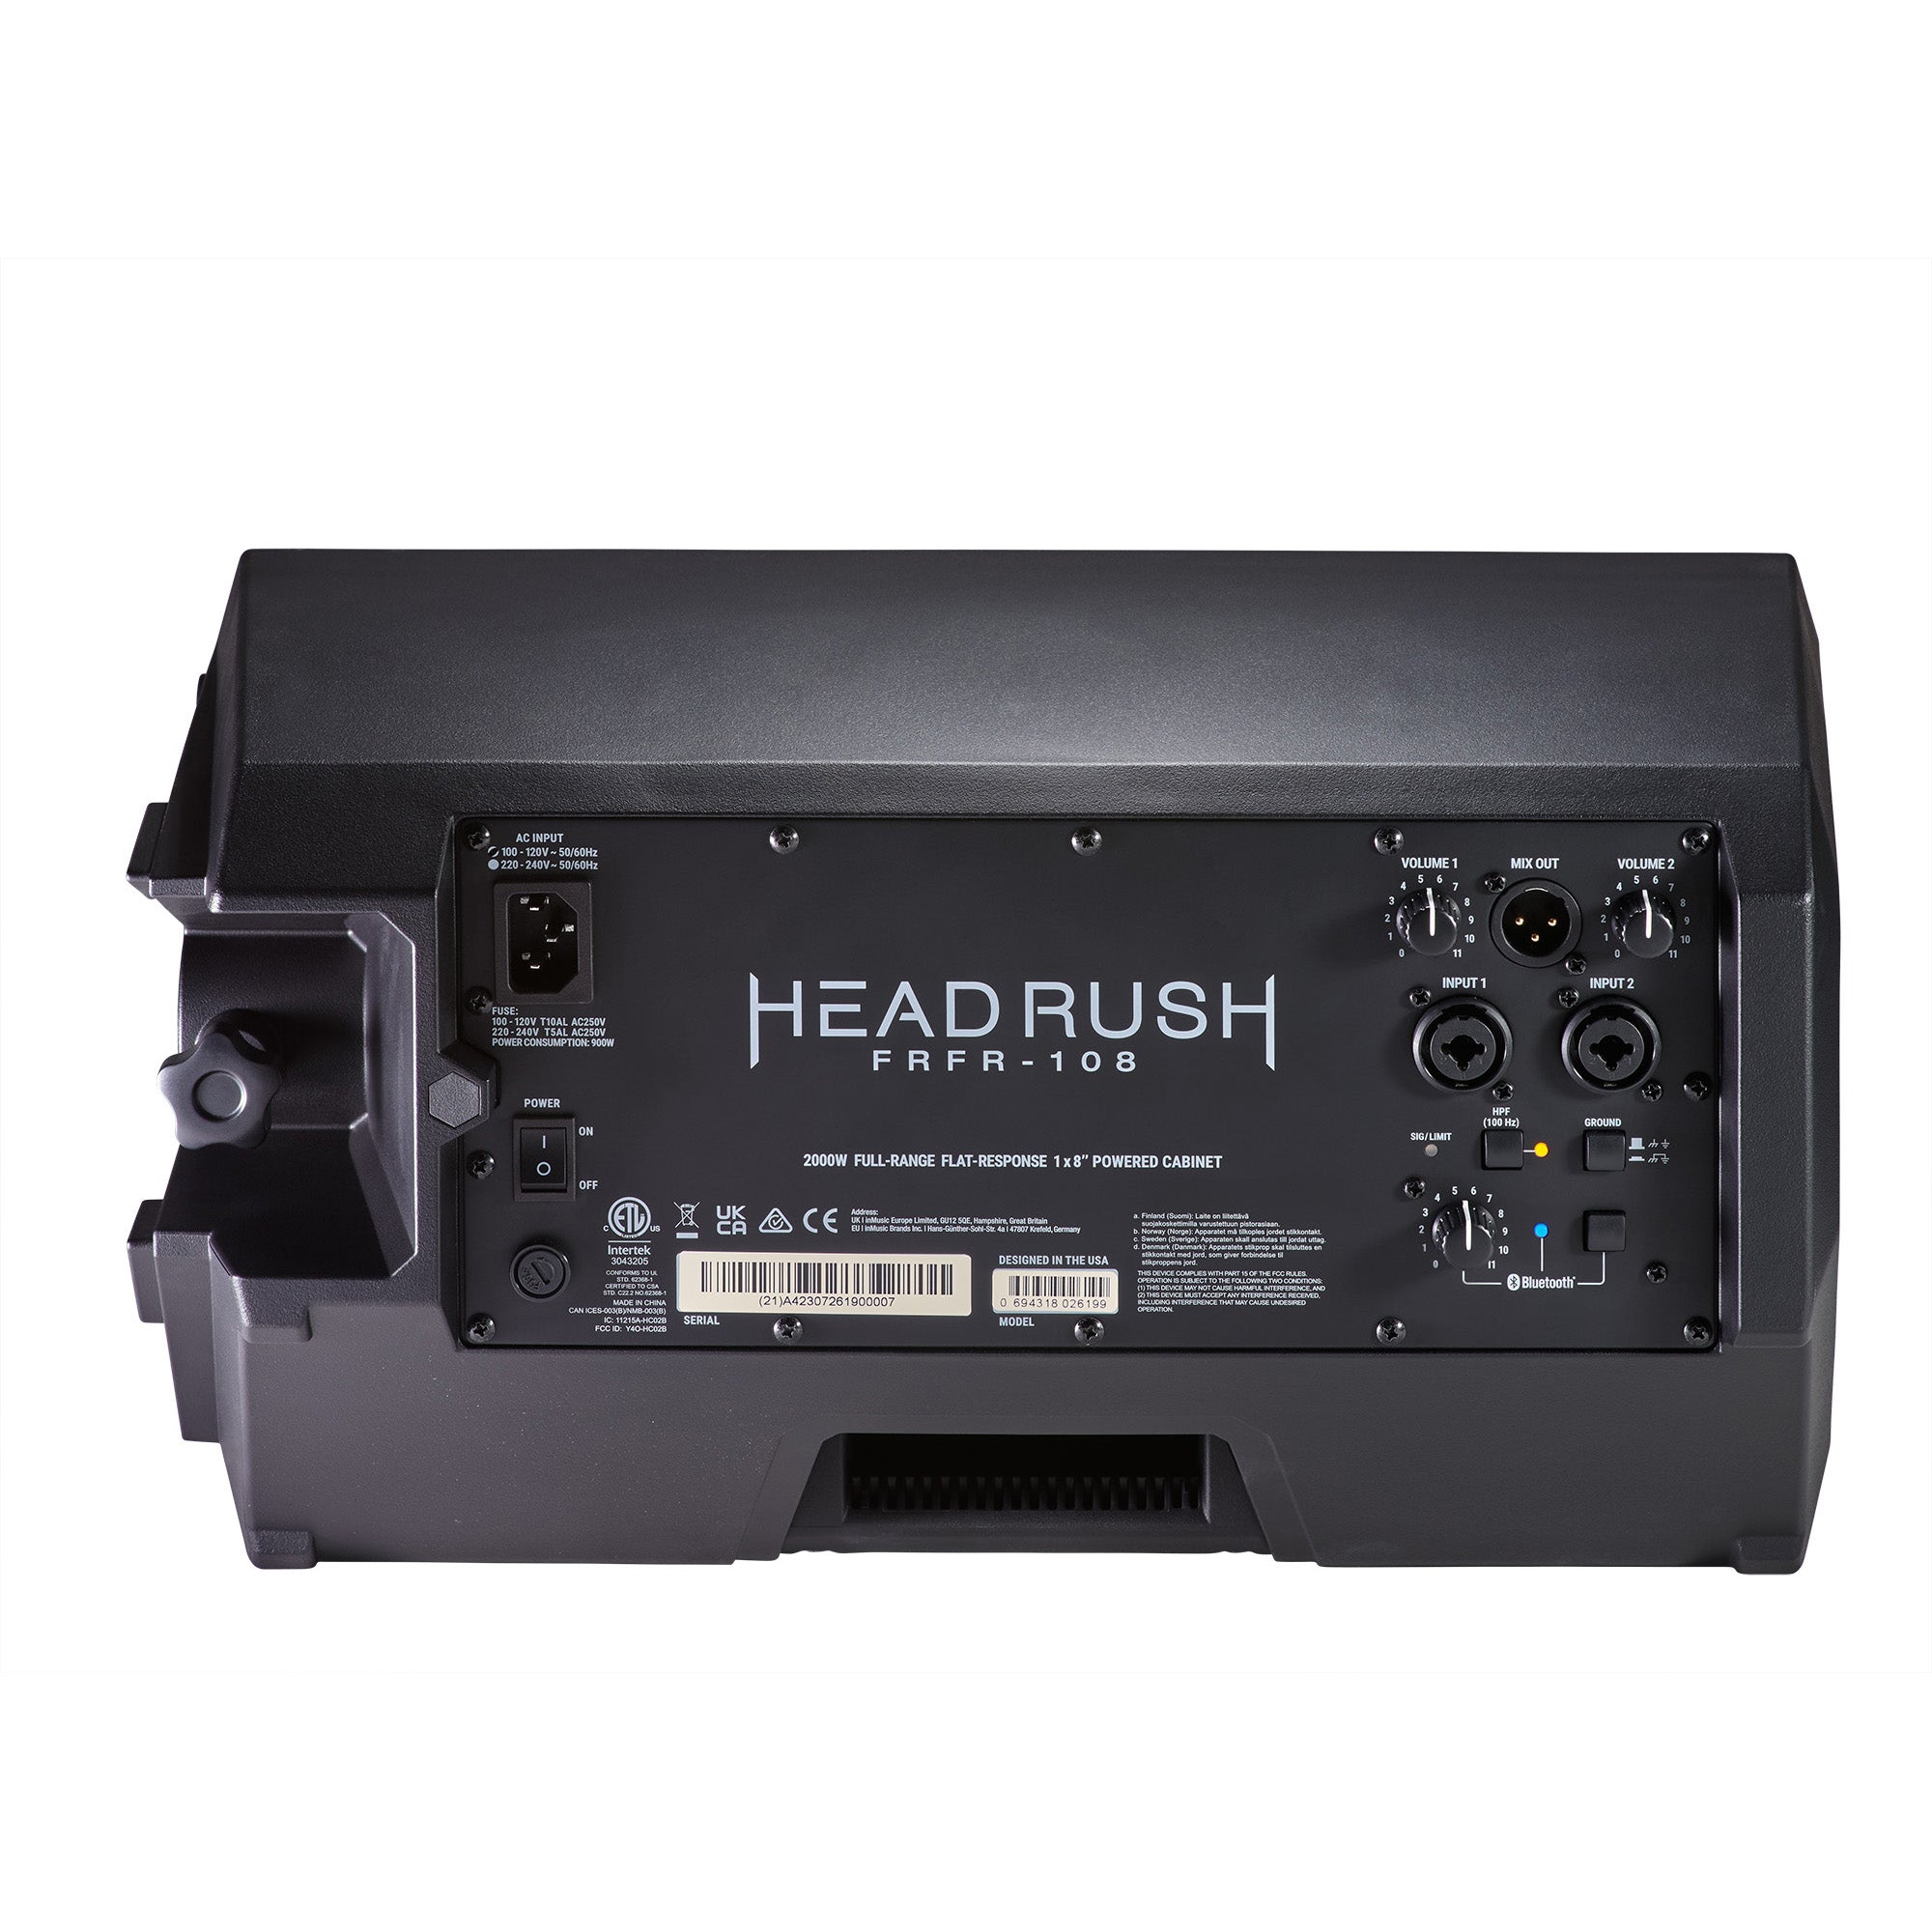 HeadRush FRFR-108 MKII 8